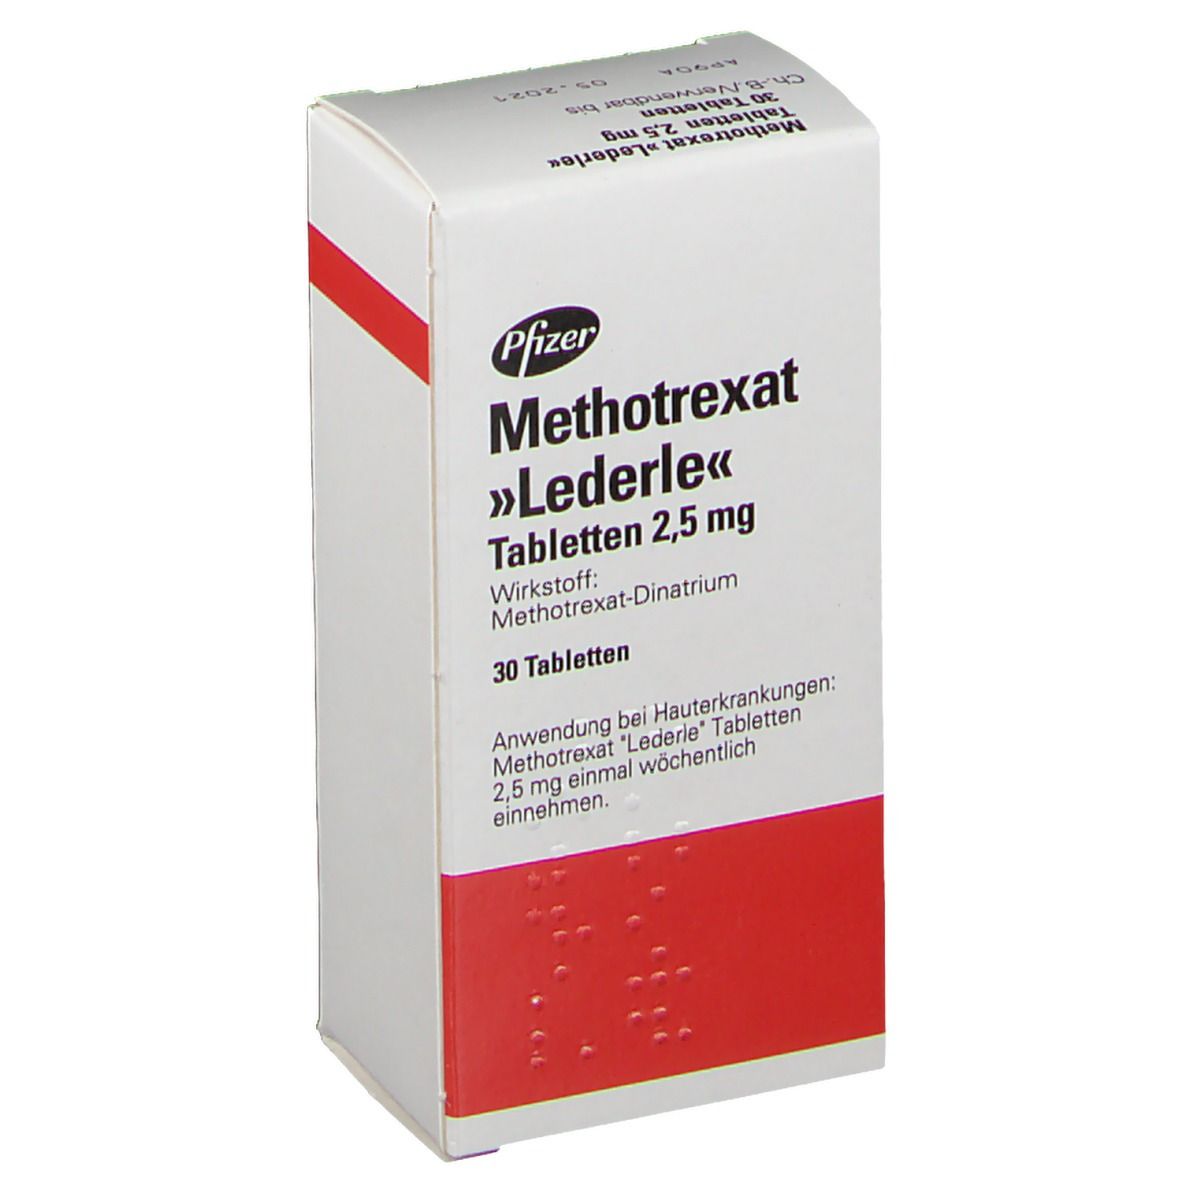 Метотрексат отзывы врачей. Метотрексат 2,5. Метотрексат Ледерле. Метотрексат 2.5 мг. Метотрексат рецепт.